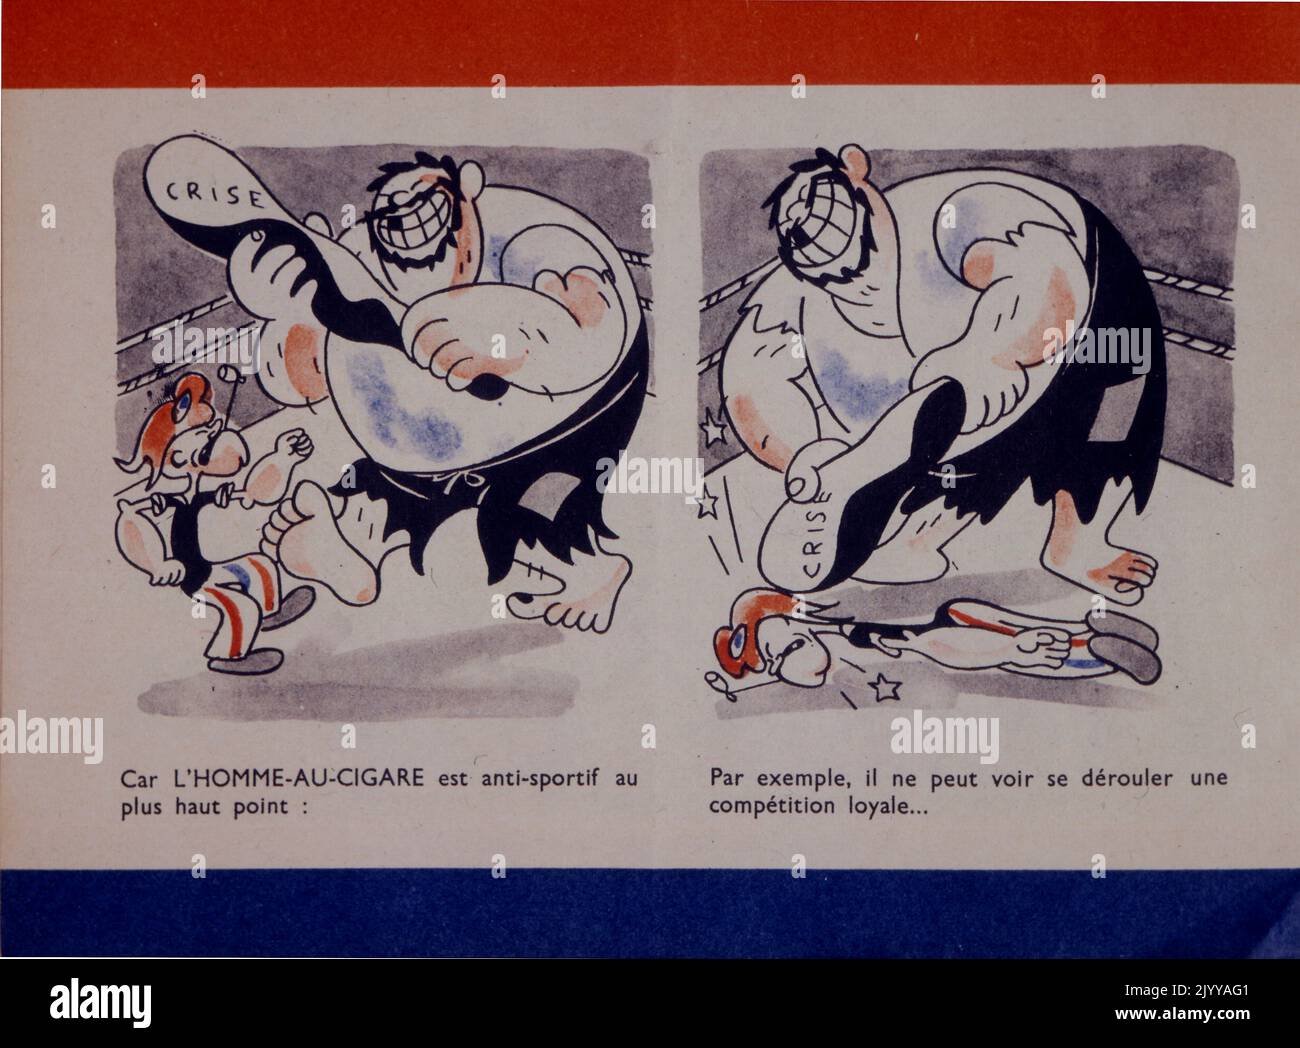 Farbiger Comic-Streifen einer frühen Version von Popeye, der die Geschichte aus dem vorherigen Bild fortsetzt. Stockfoto